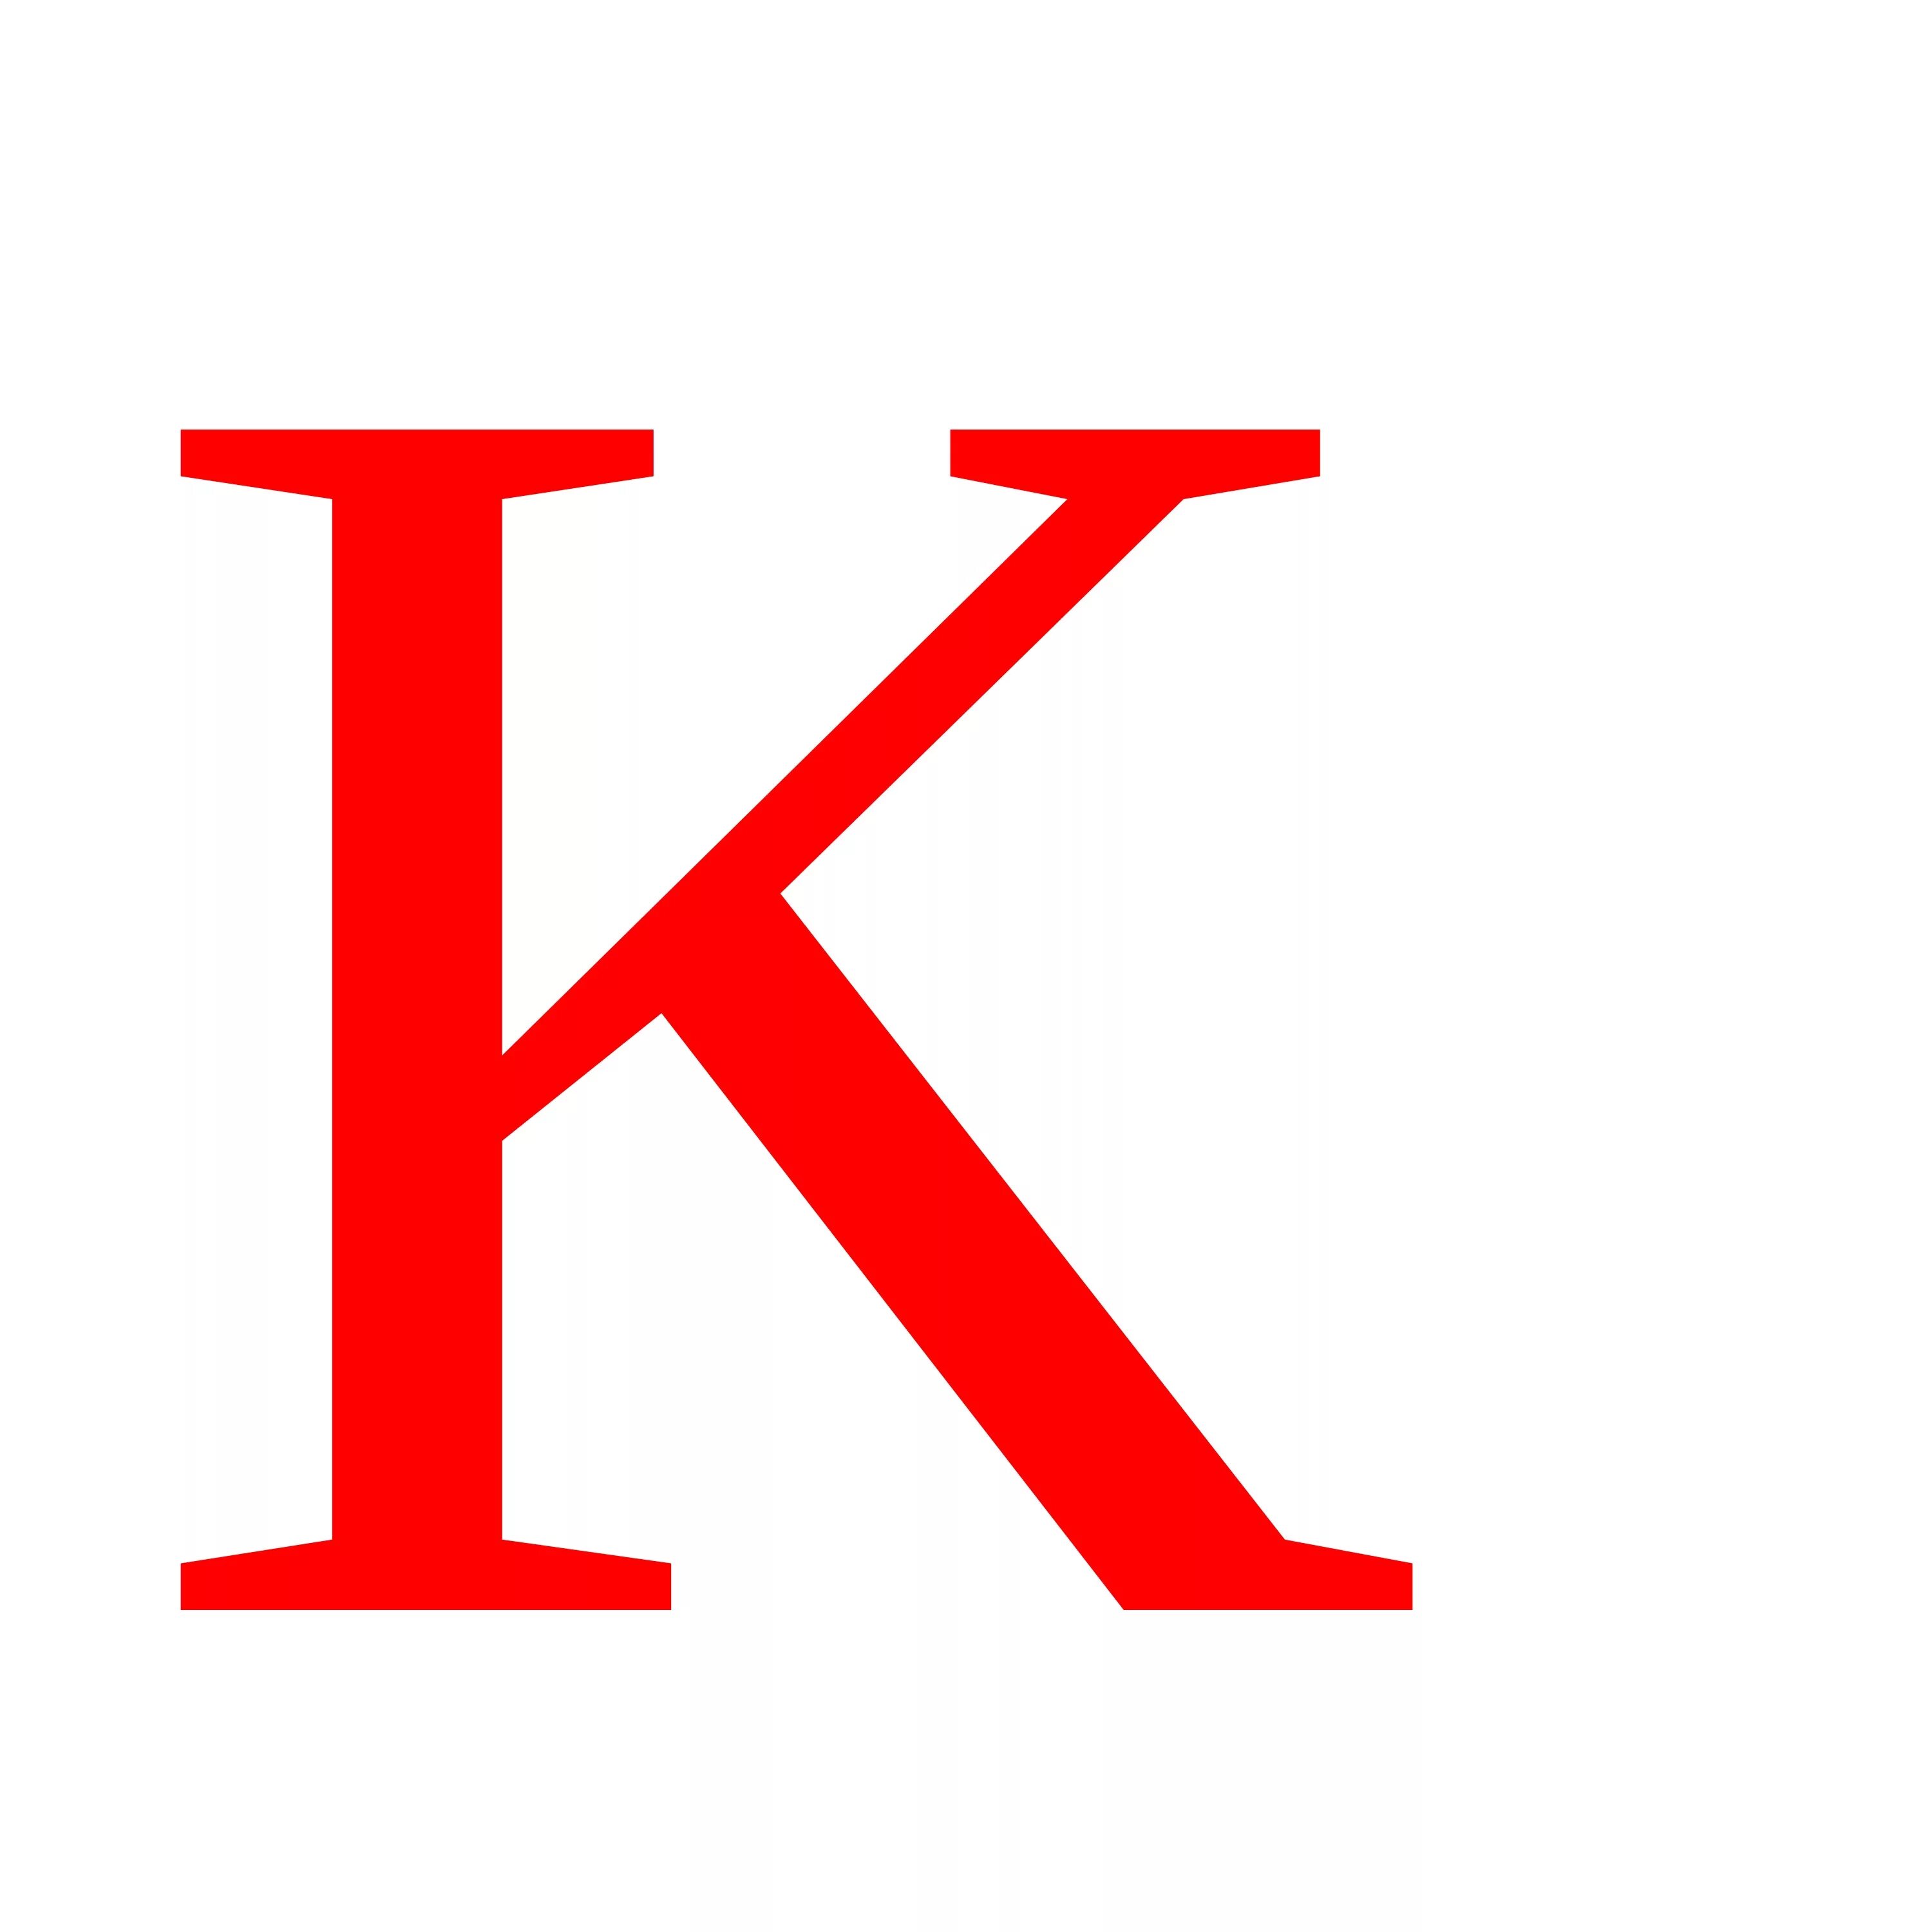 Буква k. Английская буква k. Буква KK. Большая английская буква k.